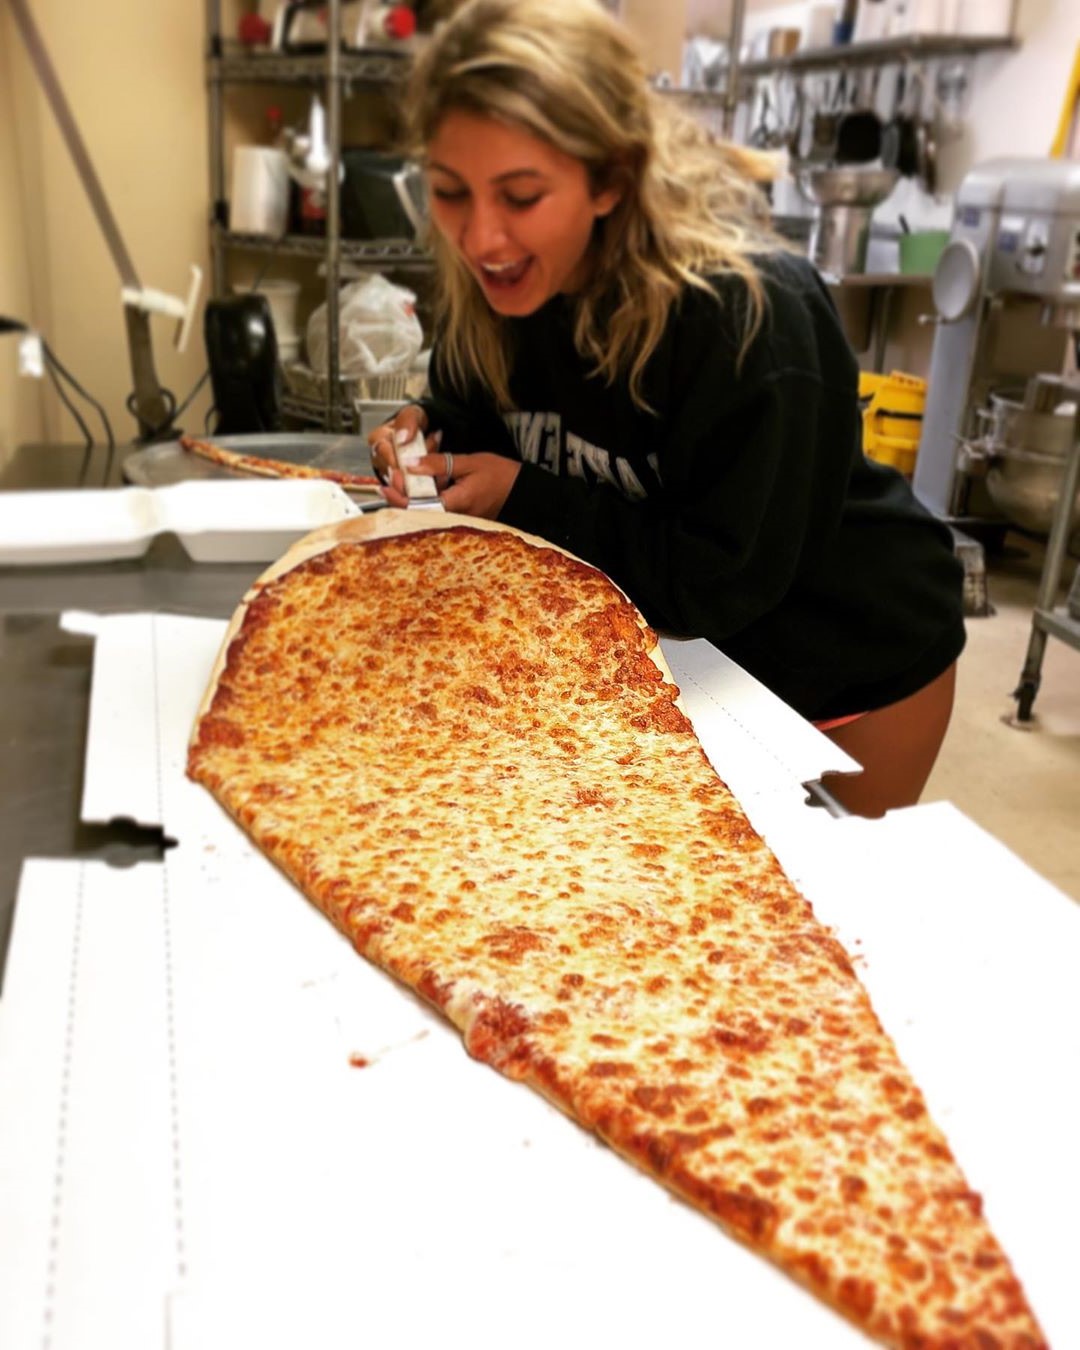 Desafío megapizza |  nueva tendencia gastronómica es una porción de pizza gigante: la más grande que hayas visto |  Su belleza